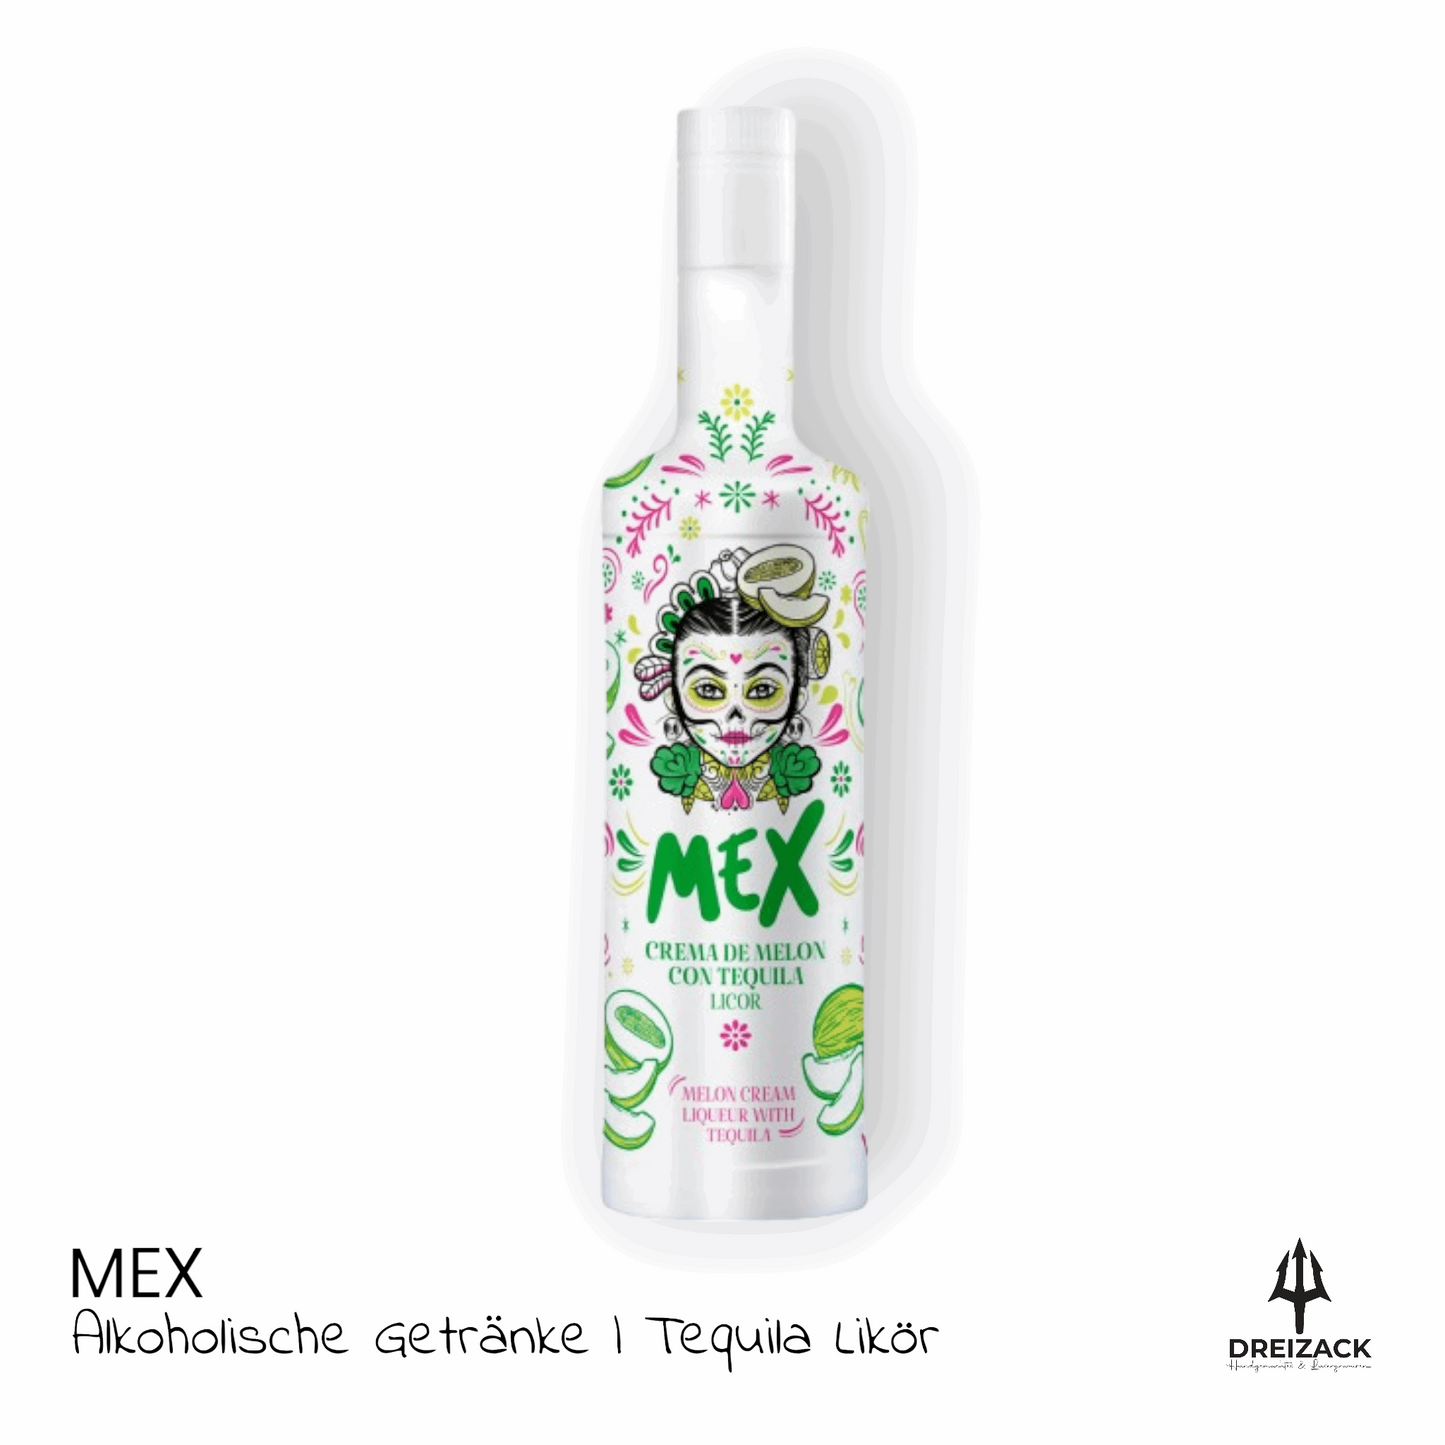 MEX Melon - Melonencreme mit Tequila Alkoholische Getränke Dreizack oesterreich handgemachte geschenke in wien